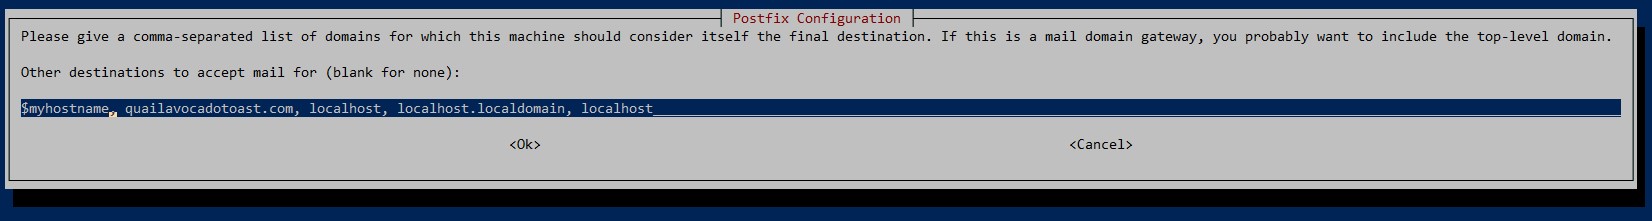 postfix configurations destinations complete